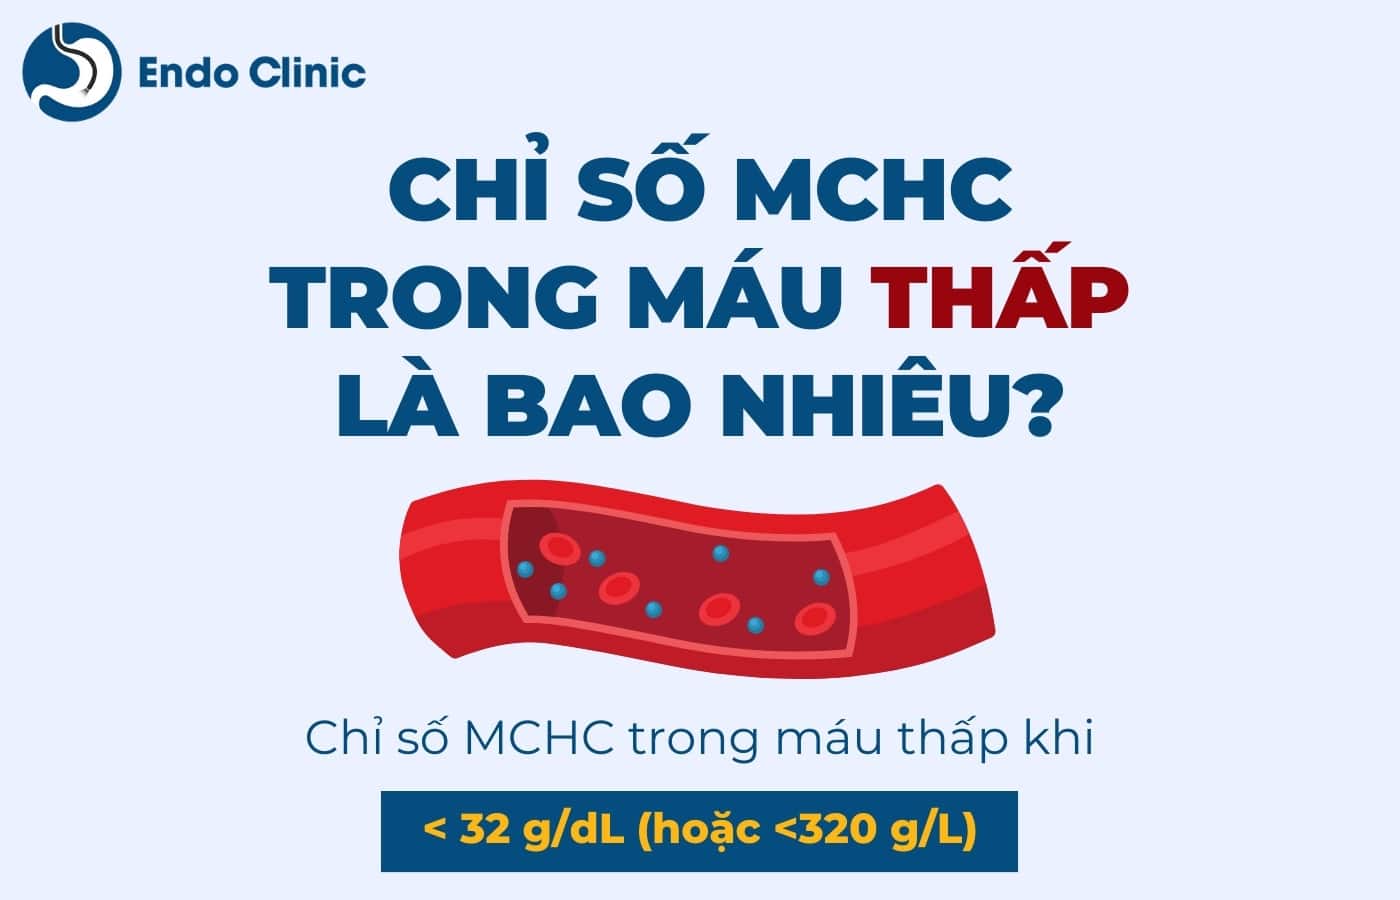 Chỉ số MCHC trong xét nghiệm máu thấp là bao nhiêu